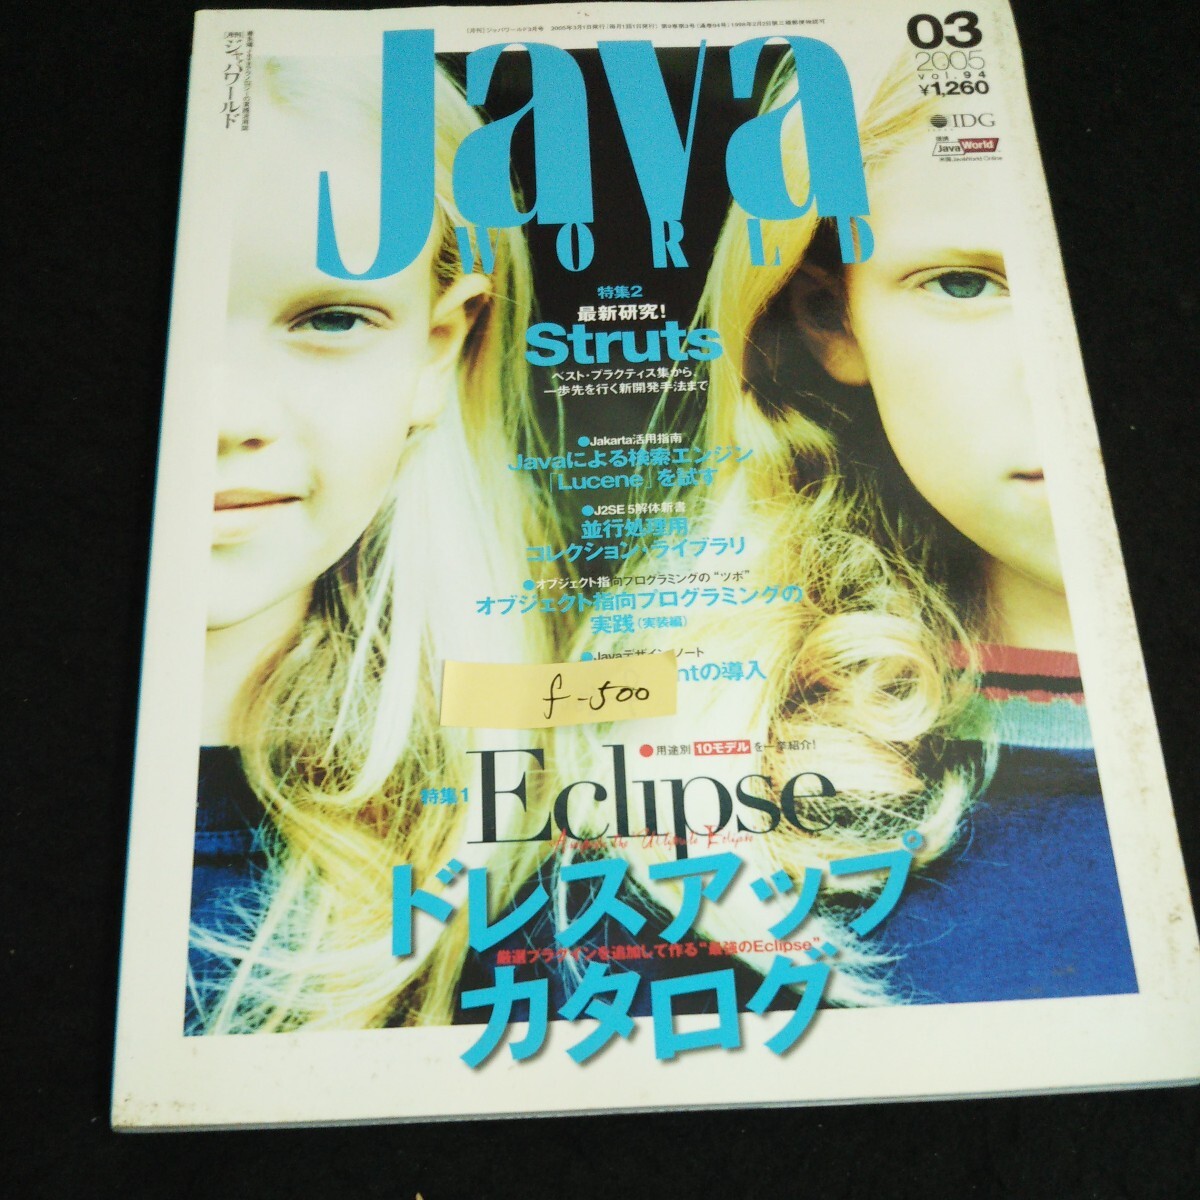 f-500 月刊ジャバワールド 3月号 ドレスアップカタログ 株式会社IDGジャパン 2005年発行※14_画像1